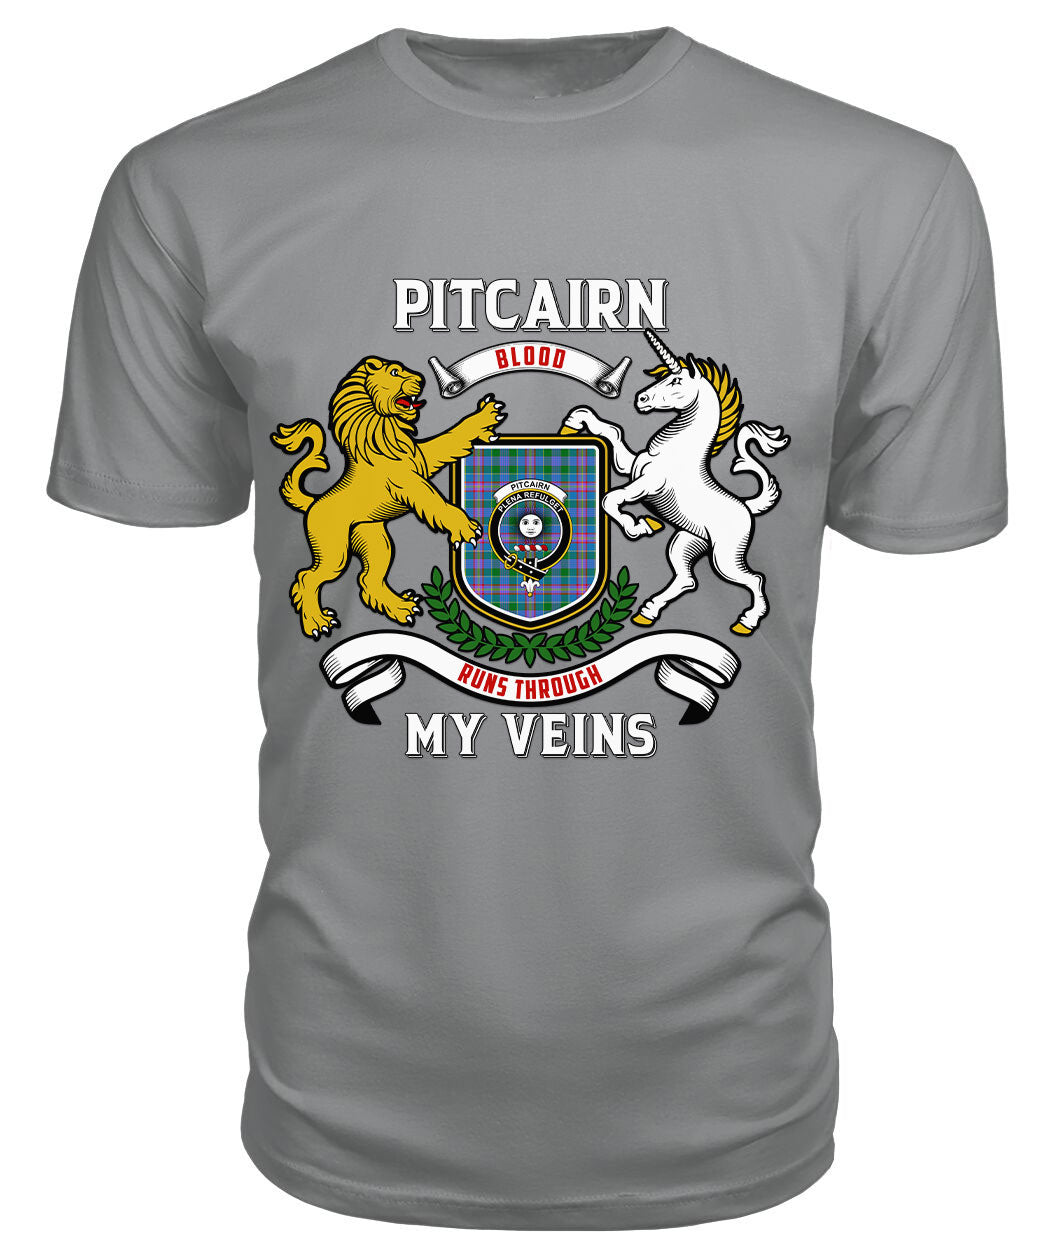 Pitcairn Hunting Tartan Crest 2D T-shirt - Blood Runs Through My Veins Style